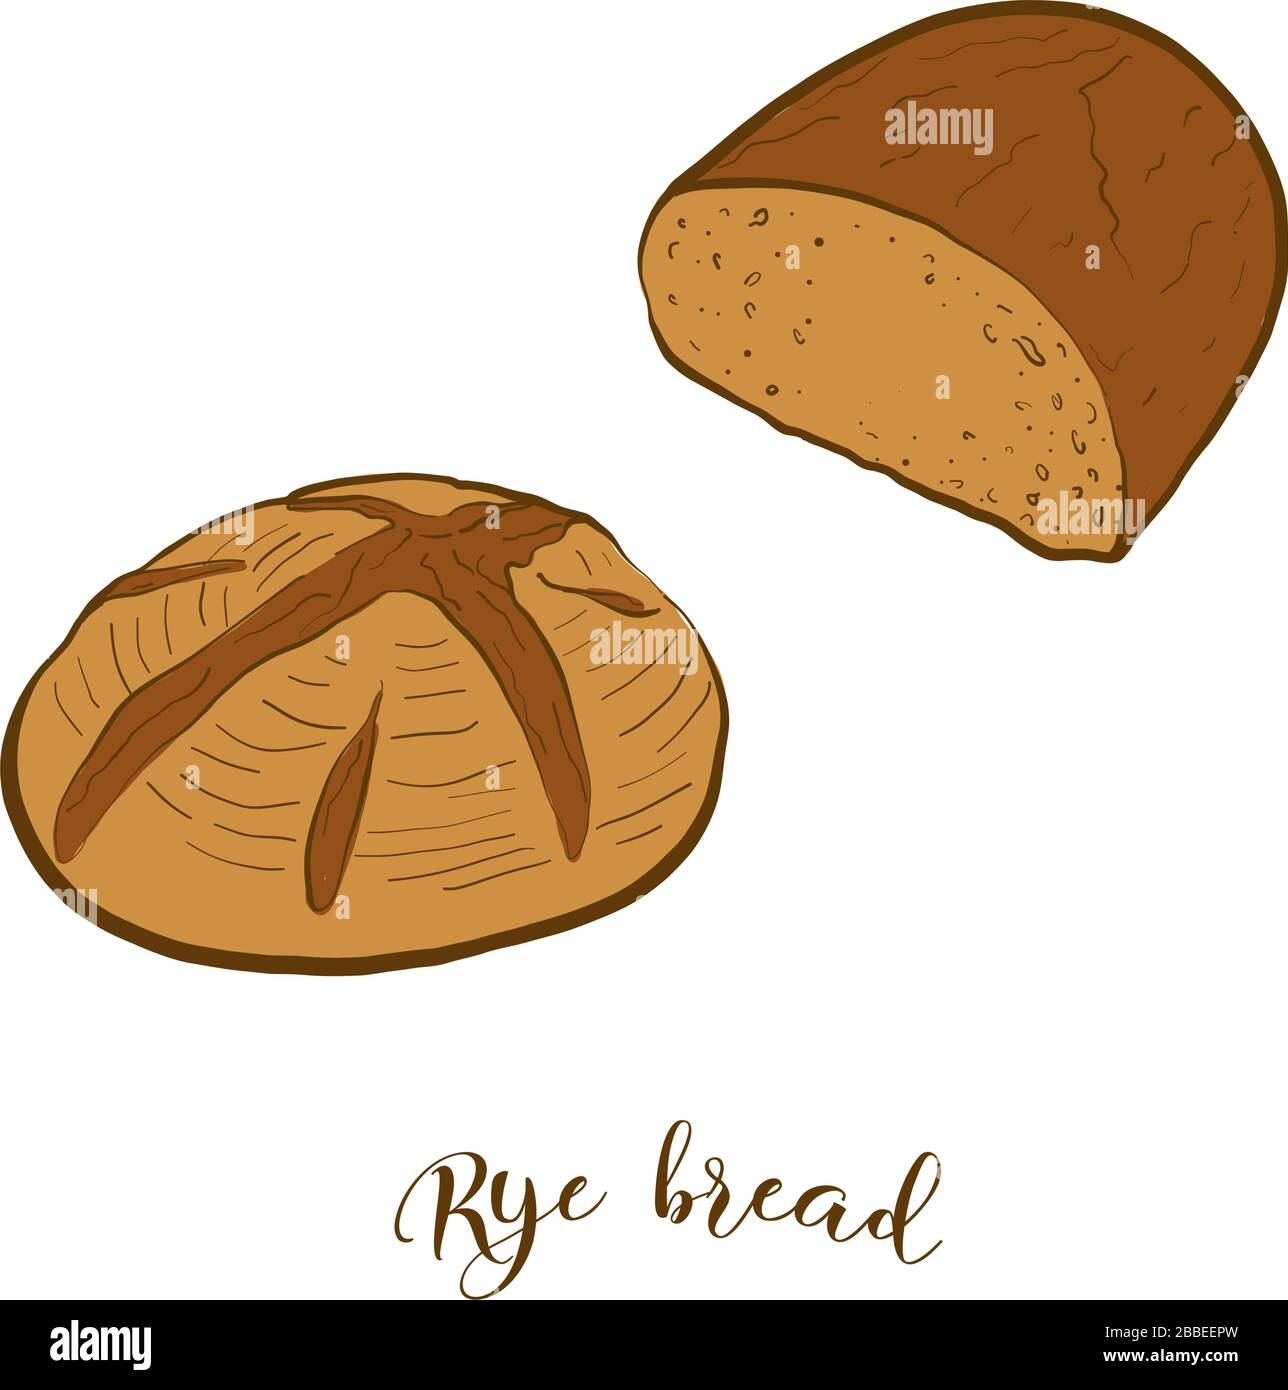 Disegno colorato del pane di Rye. Illustrazione vettoriale di cibo lievitato, di solito conosciuto in Europa, America, Israele. Schizzi di pane colorati. Illustrazione Vettoriale